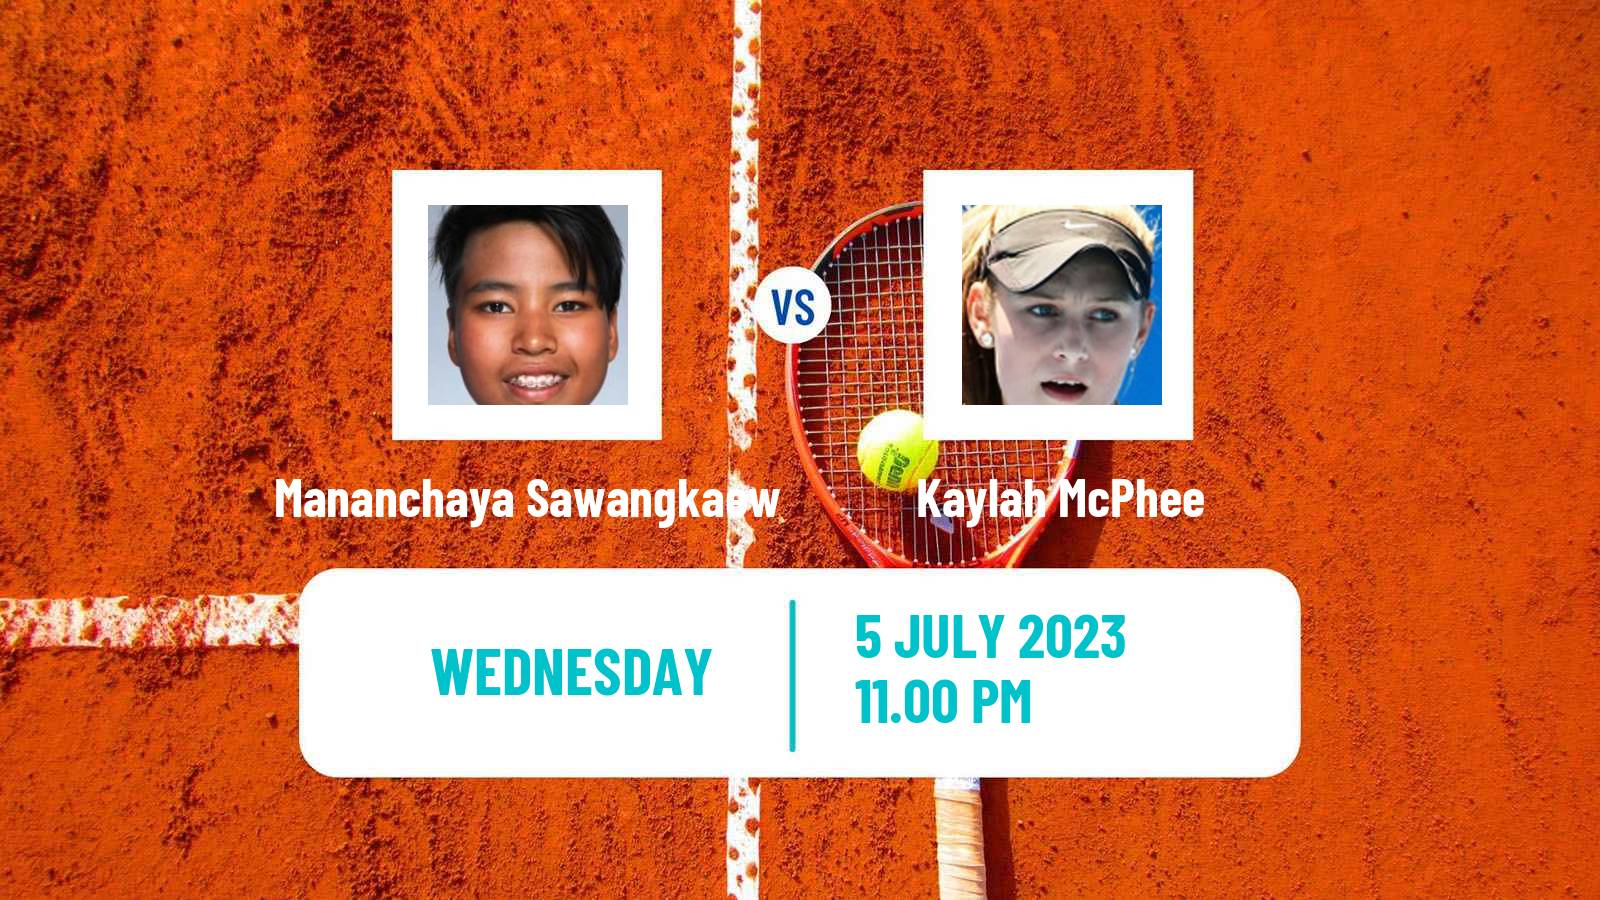 Tennis ITF W25 Nakhon Si Thammarat 2 Women Mananchaya Sawangkaew - Kaylah McPhee